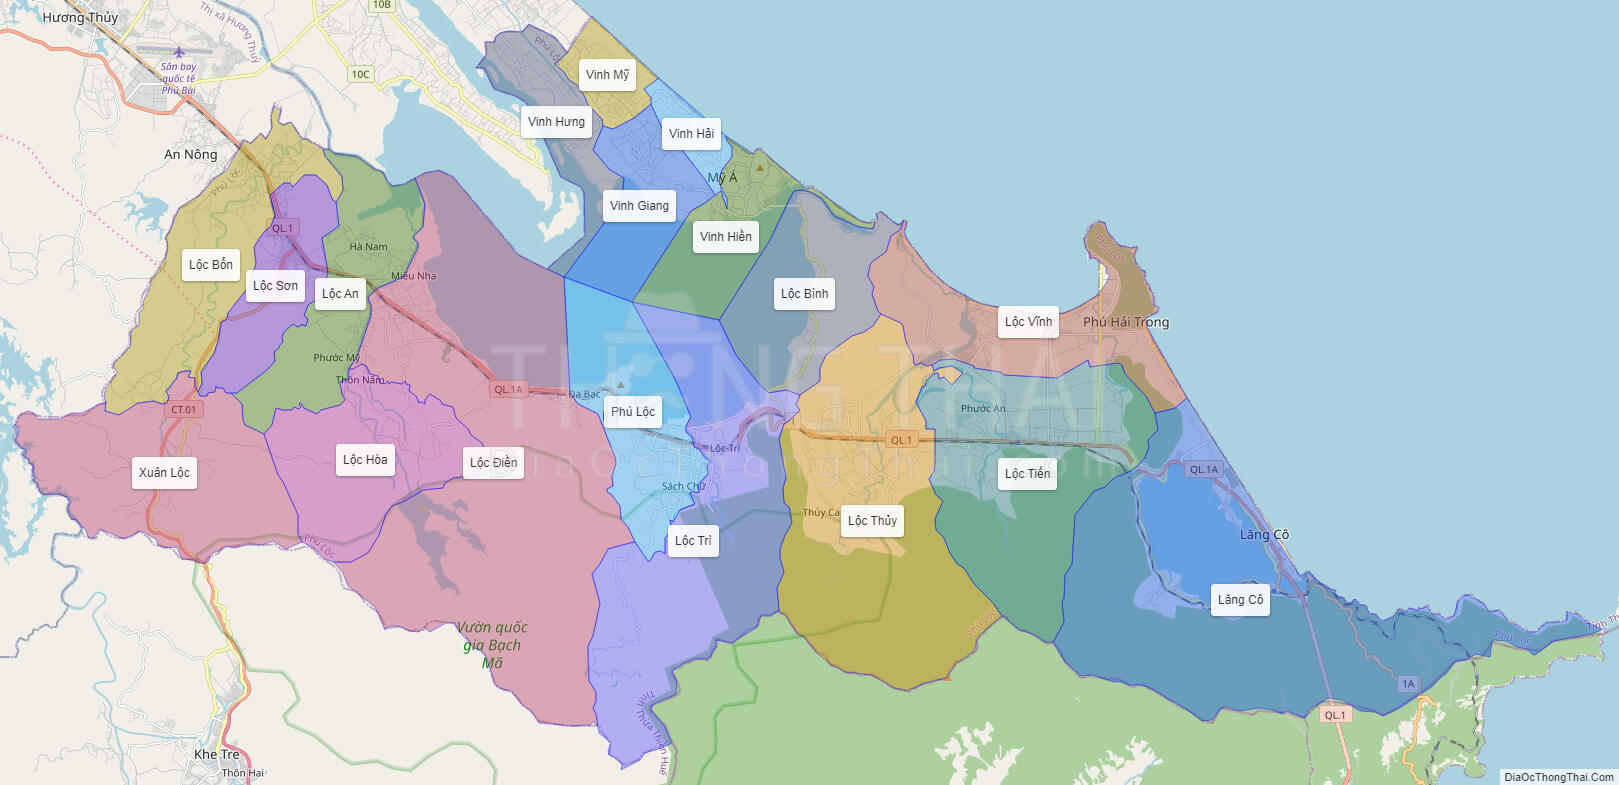 Bản đồ huyện Phú Lộc: Cập nhật bản đồ huyện Phú Lộc mới nhất, đầy đủ thông tin về địa lý, dân cư, kinh tế và văn hóa. Hãy cùng khám phá văn hóa và đặc sản ẩm thực vùng đất này, đồng thời nắm bắt kỹ hơn về tiềm năng đầu tư và du lịch của huyện Phú Lộc trong tương lai.